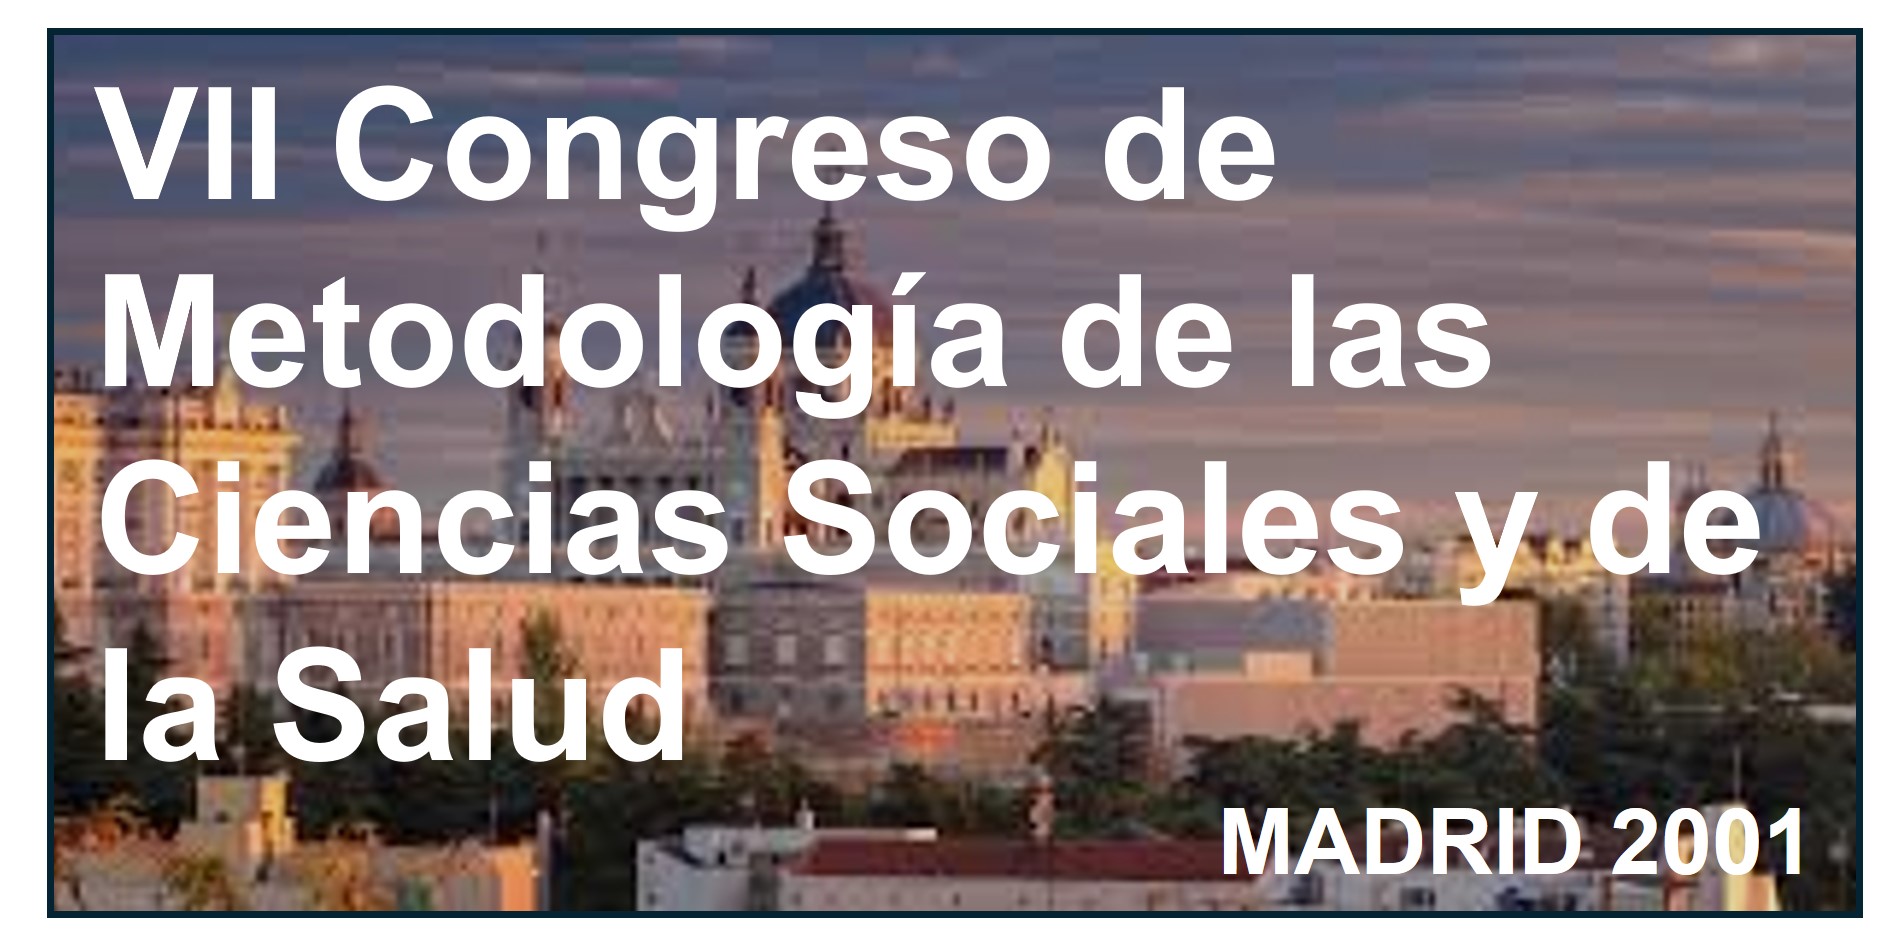    VII Congreso de Metodología de las Ciencias Sociales y de la Salud